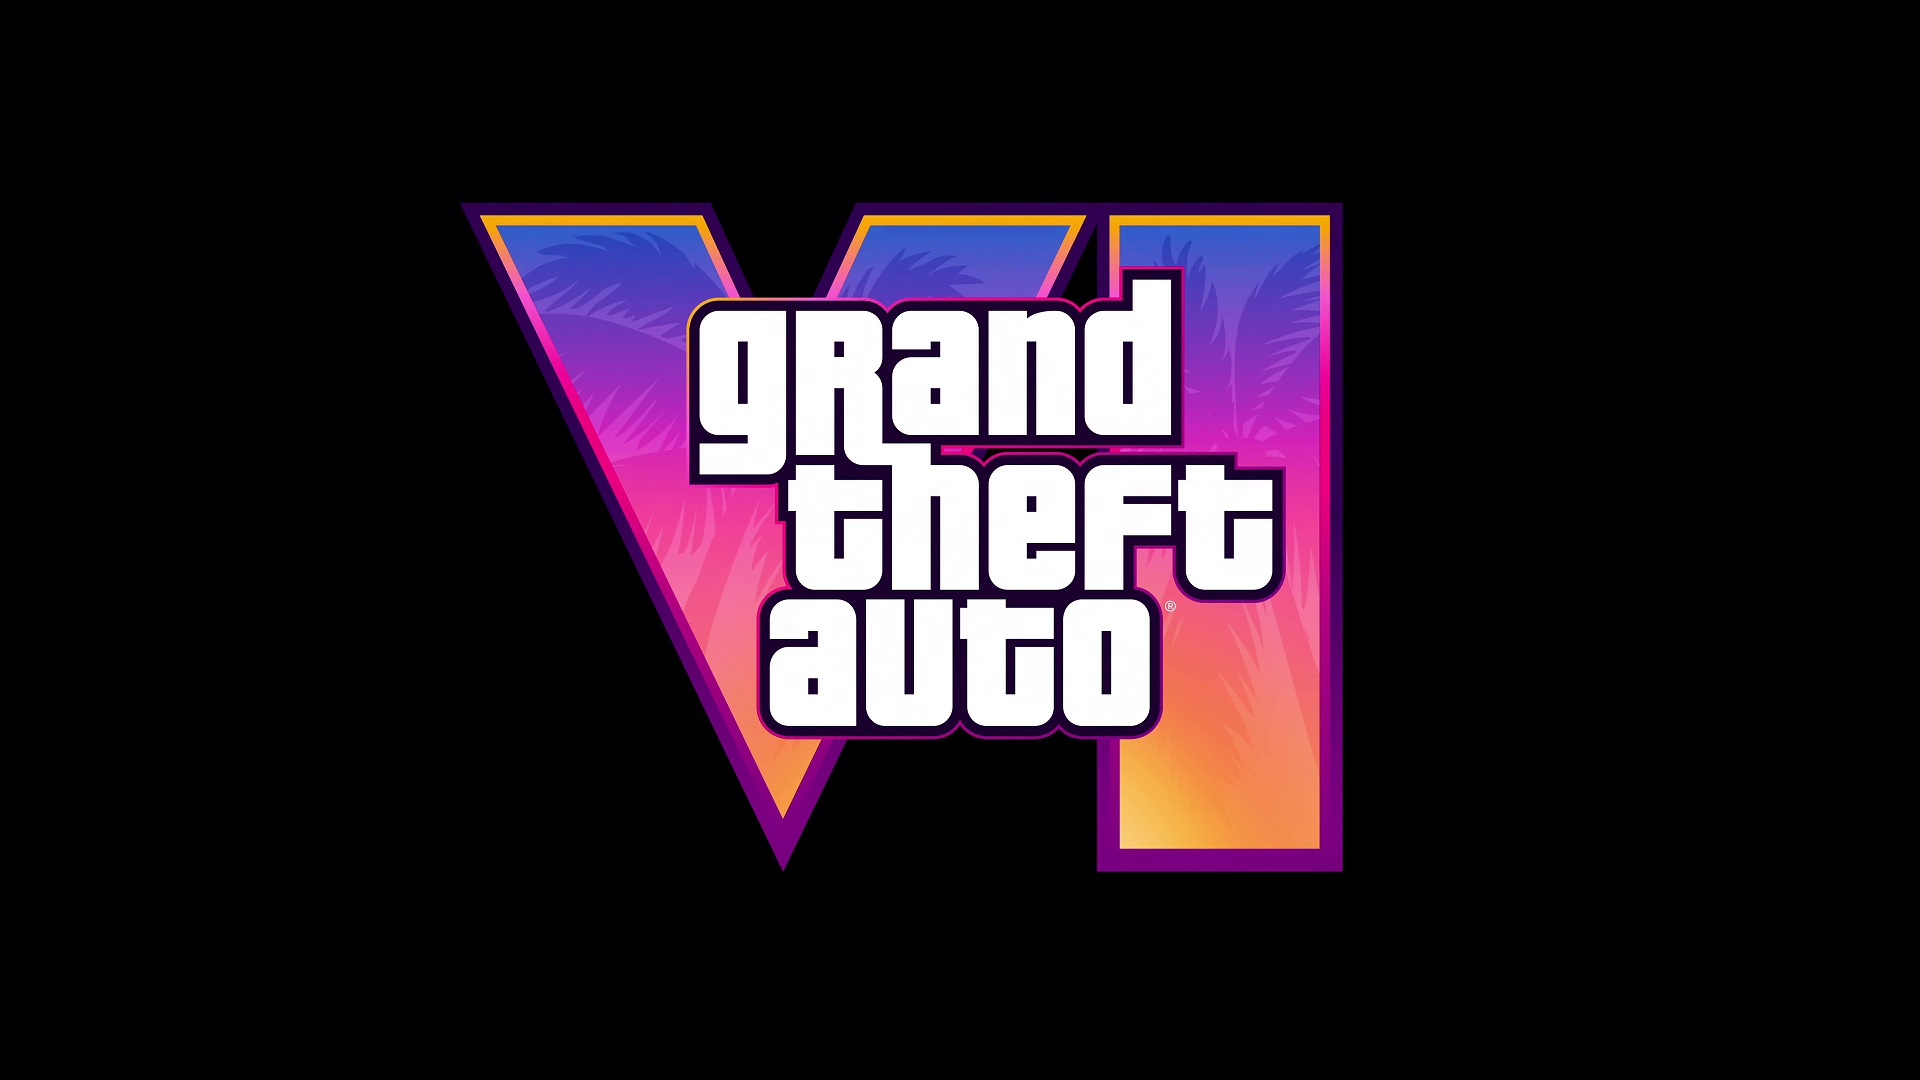 موشکافی اولین تریلر بازی GTA 6: از وایس سیتی جدید تا الهام از داستان واقعی